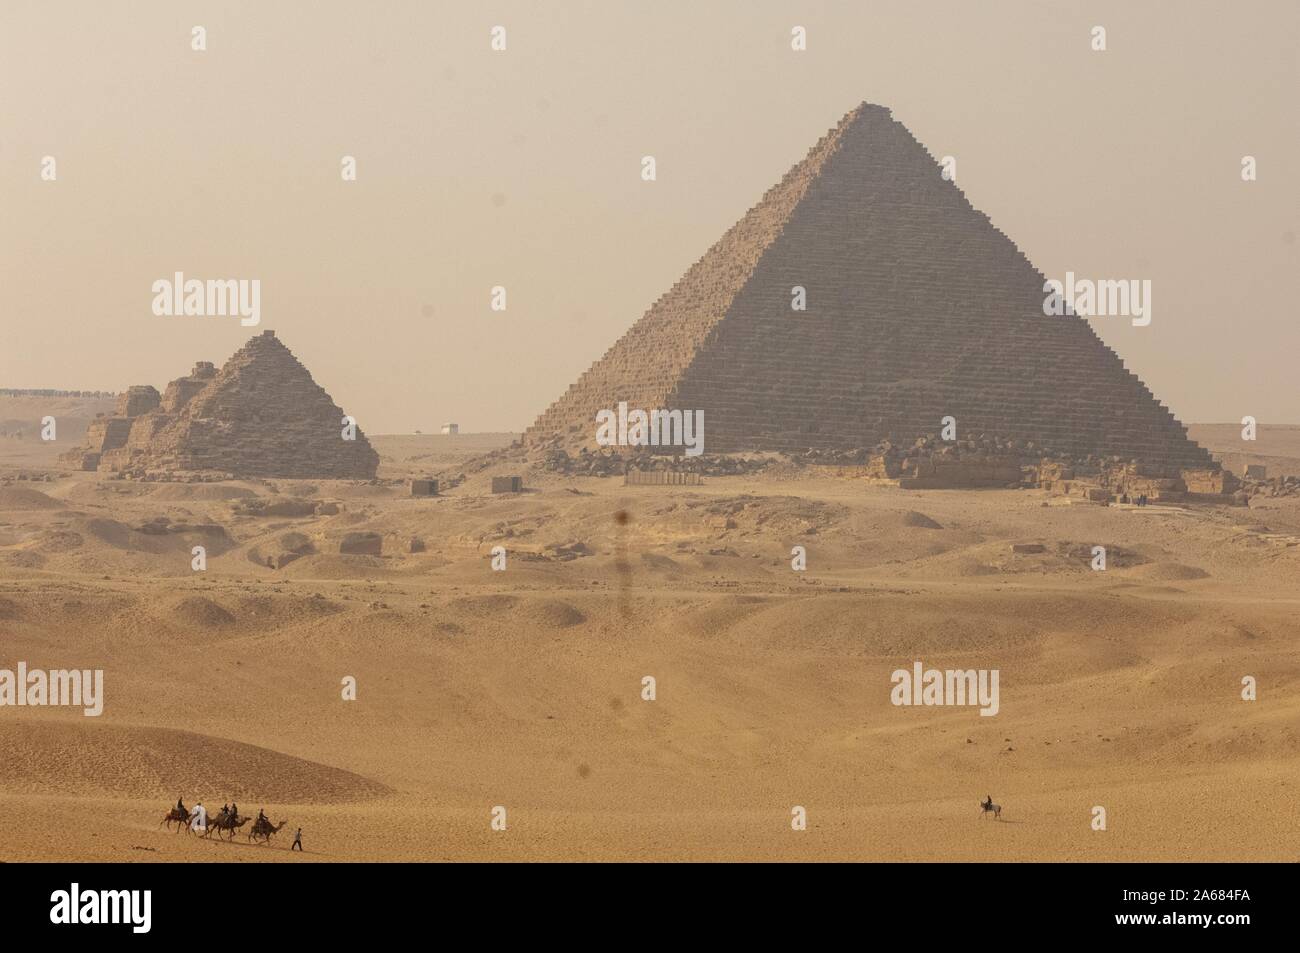 La pyramide de menkaourê complexe, sur une journée ensoleillée, avec des gens chameaux et un cheval sur les dunes de sable à l'avant-plan, Giza, Egypte, le 7 janvier 2008. À partir de la collection photographique de Homewood. () Banque D'Images